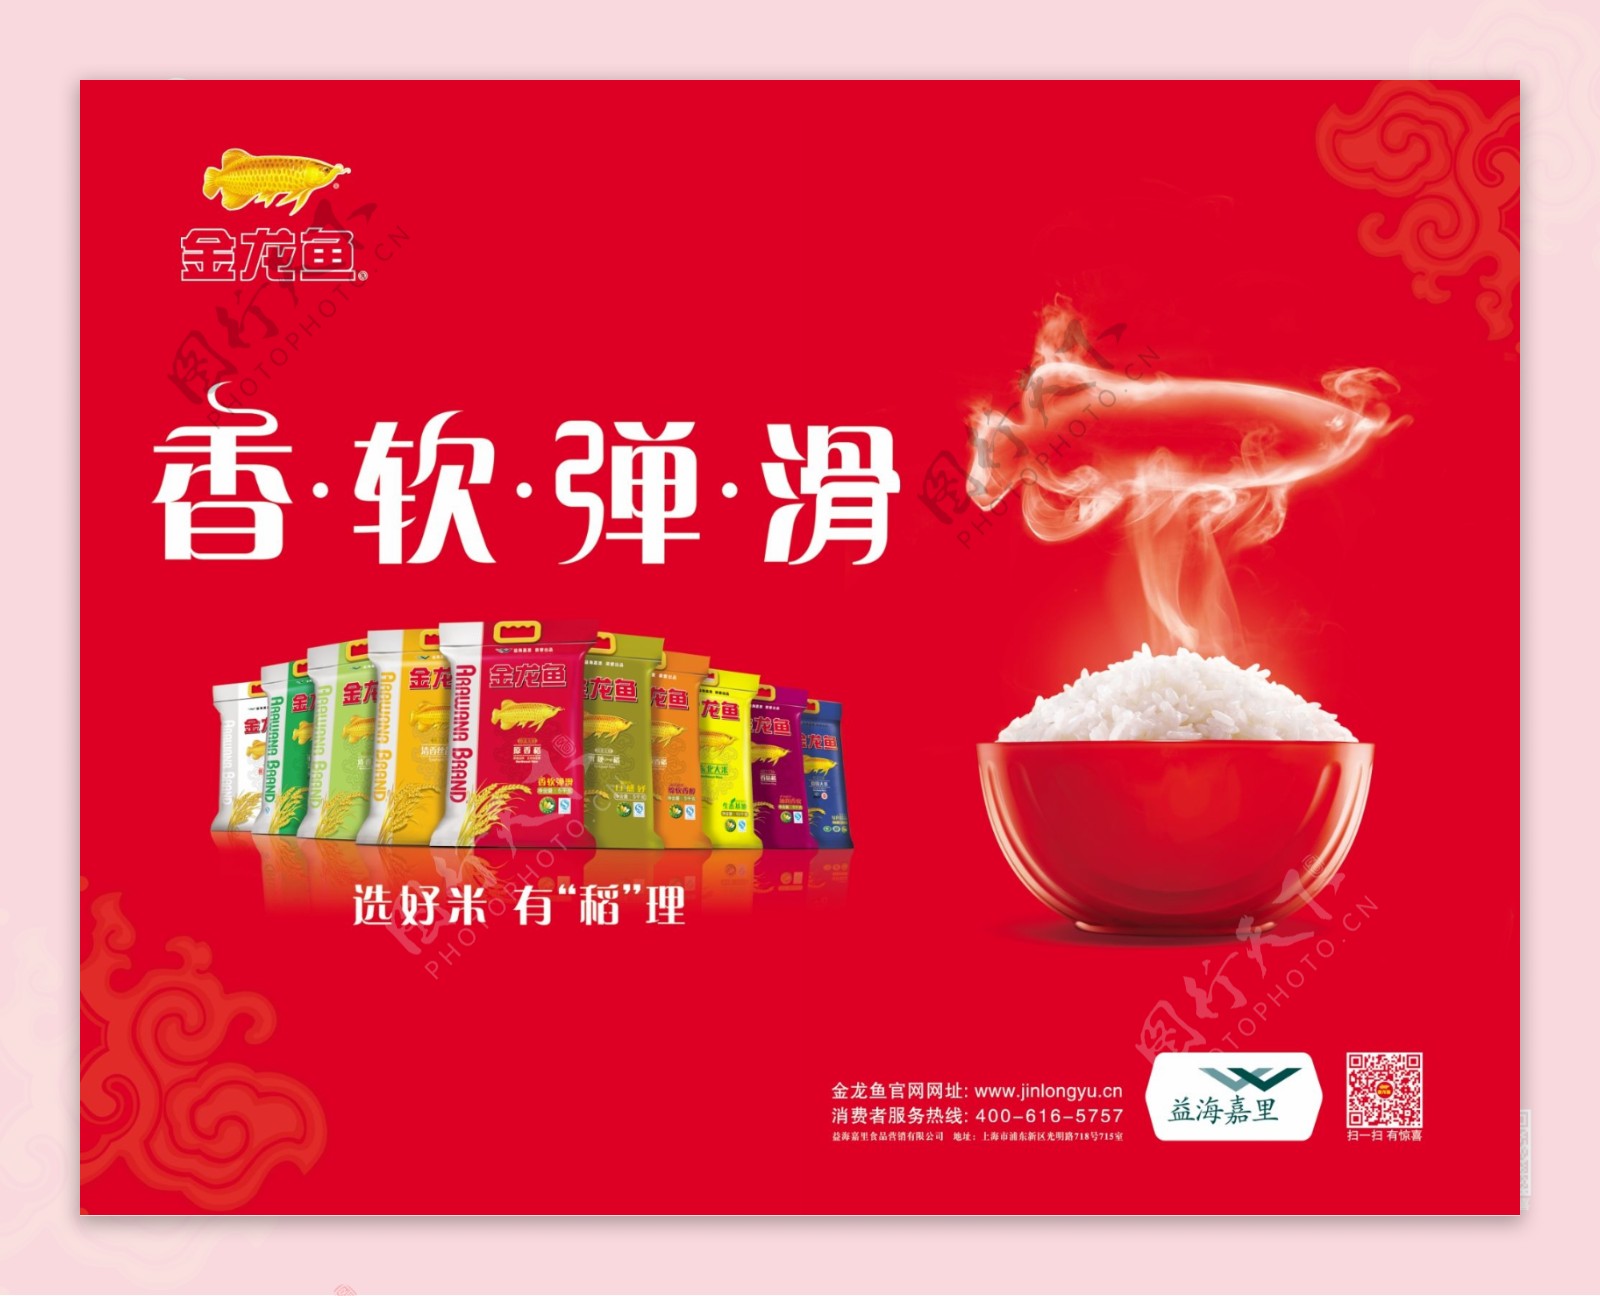 金龙鱼产品米的宣传海报